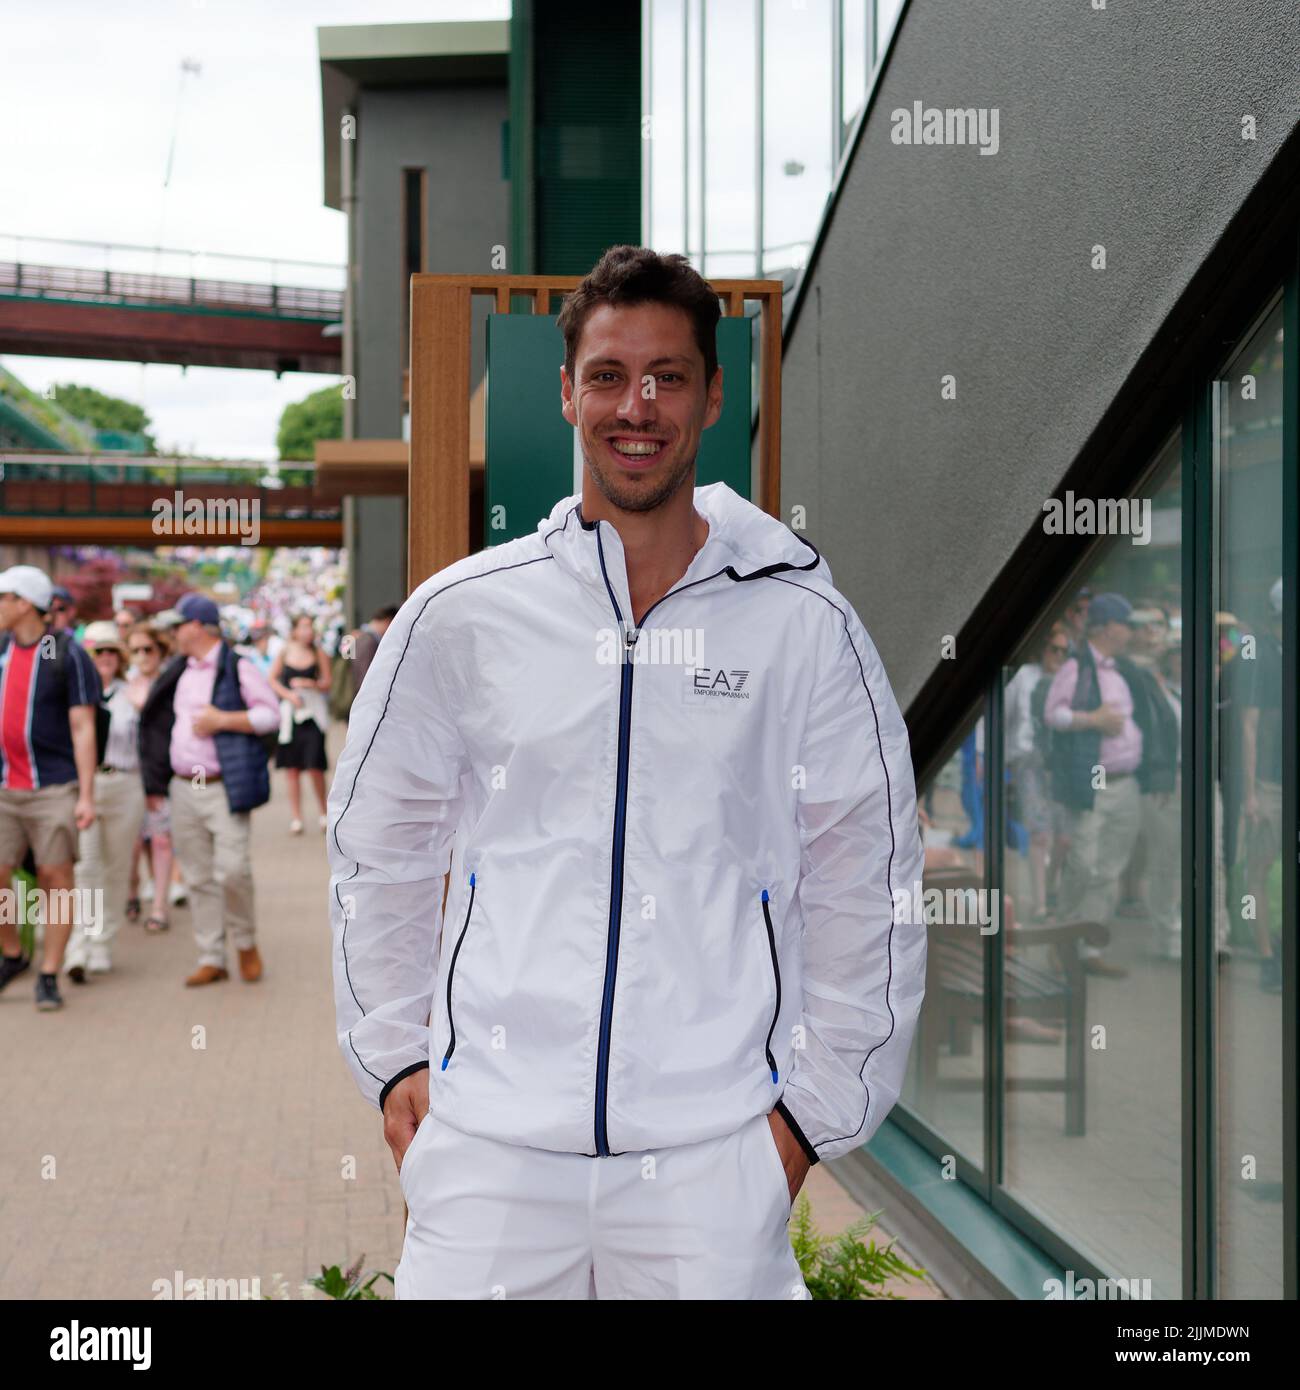 Wimbledon, Gran Londres, Inglaterra, Julio 02 2022: Campeonato de Tenis de Wimbledon. El jugador de tenis sonríe para una foto antes de jugar un partido. Foto de stock